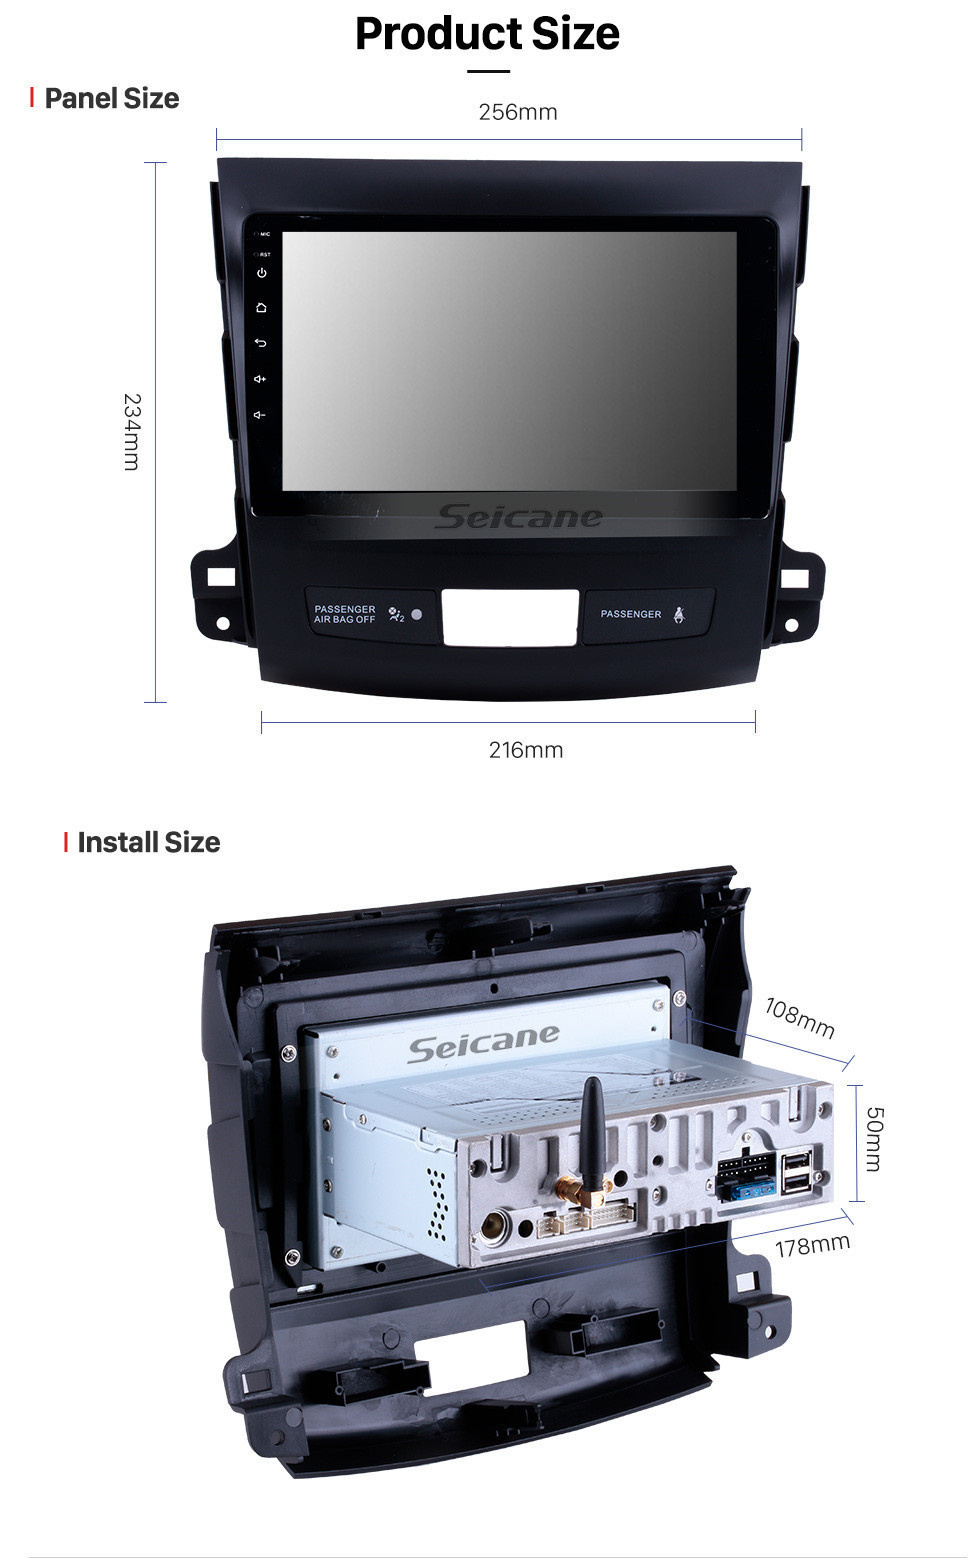 Seicane 9 pouces Android 11.0 Radio à écran tactile Bluetooth Système de navigation GPS pour 2006-2014 Mitsubishi OUTLANDER Support TPMS DVR OBD II USB SD 3G WiFi Caméra arrière Commande au volant HD 1080P Vidéo AUX